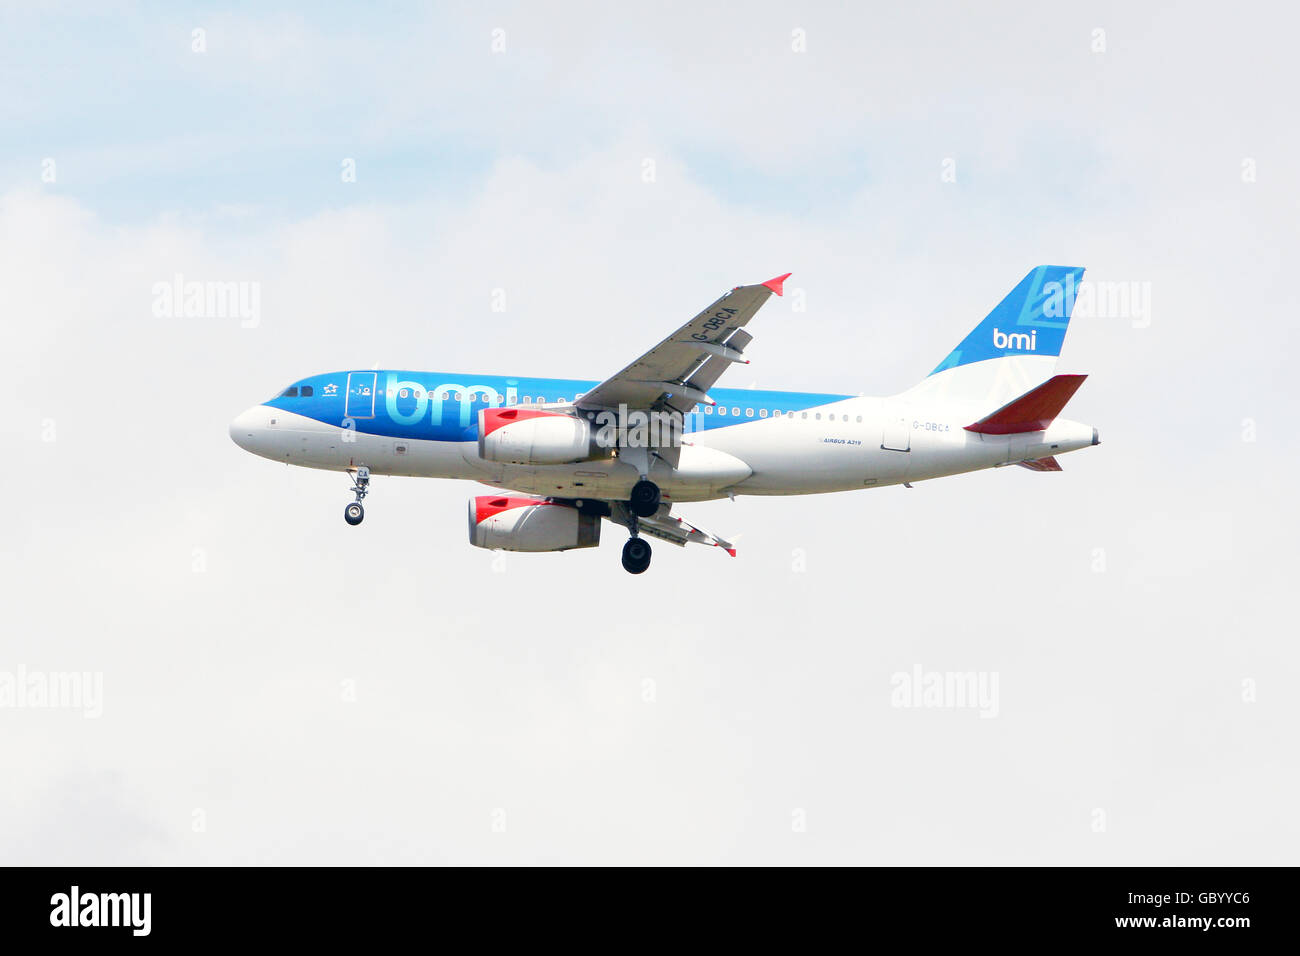 Un aereo BMI Airbus A319 atterra all'aeroporto di Heathrow, Middlesex. PREMERE ASSOCIAZIONE foto. Data immagine: Lunedì 20 luglio 2009. Il credito fotografico dovrebbe essere: Steve Parsons/PA Wire Foto Stock